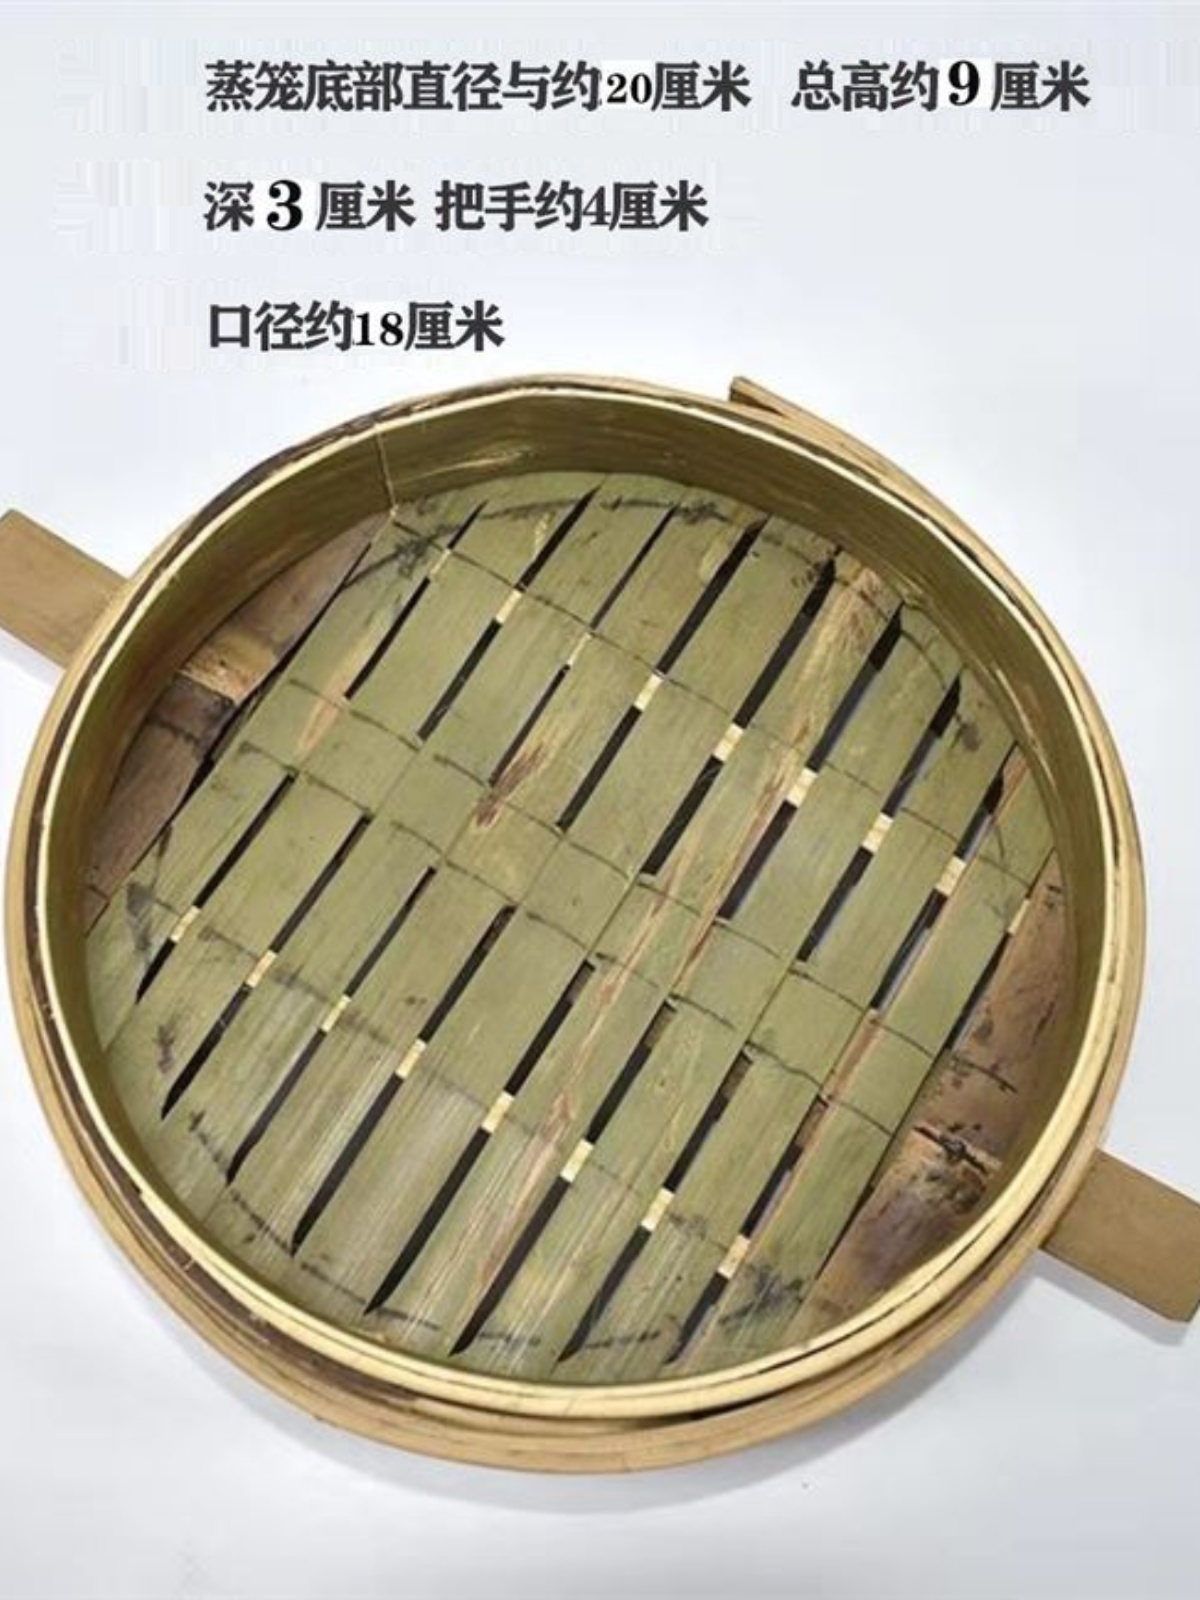 制品蒸笼海鲜竹编纯手工艺四川特色产出蒸包子馒头菜鱼虾蟹毛竹